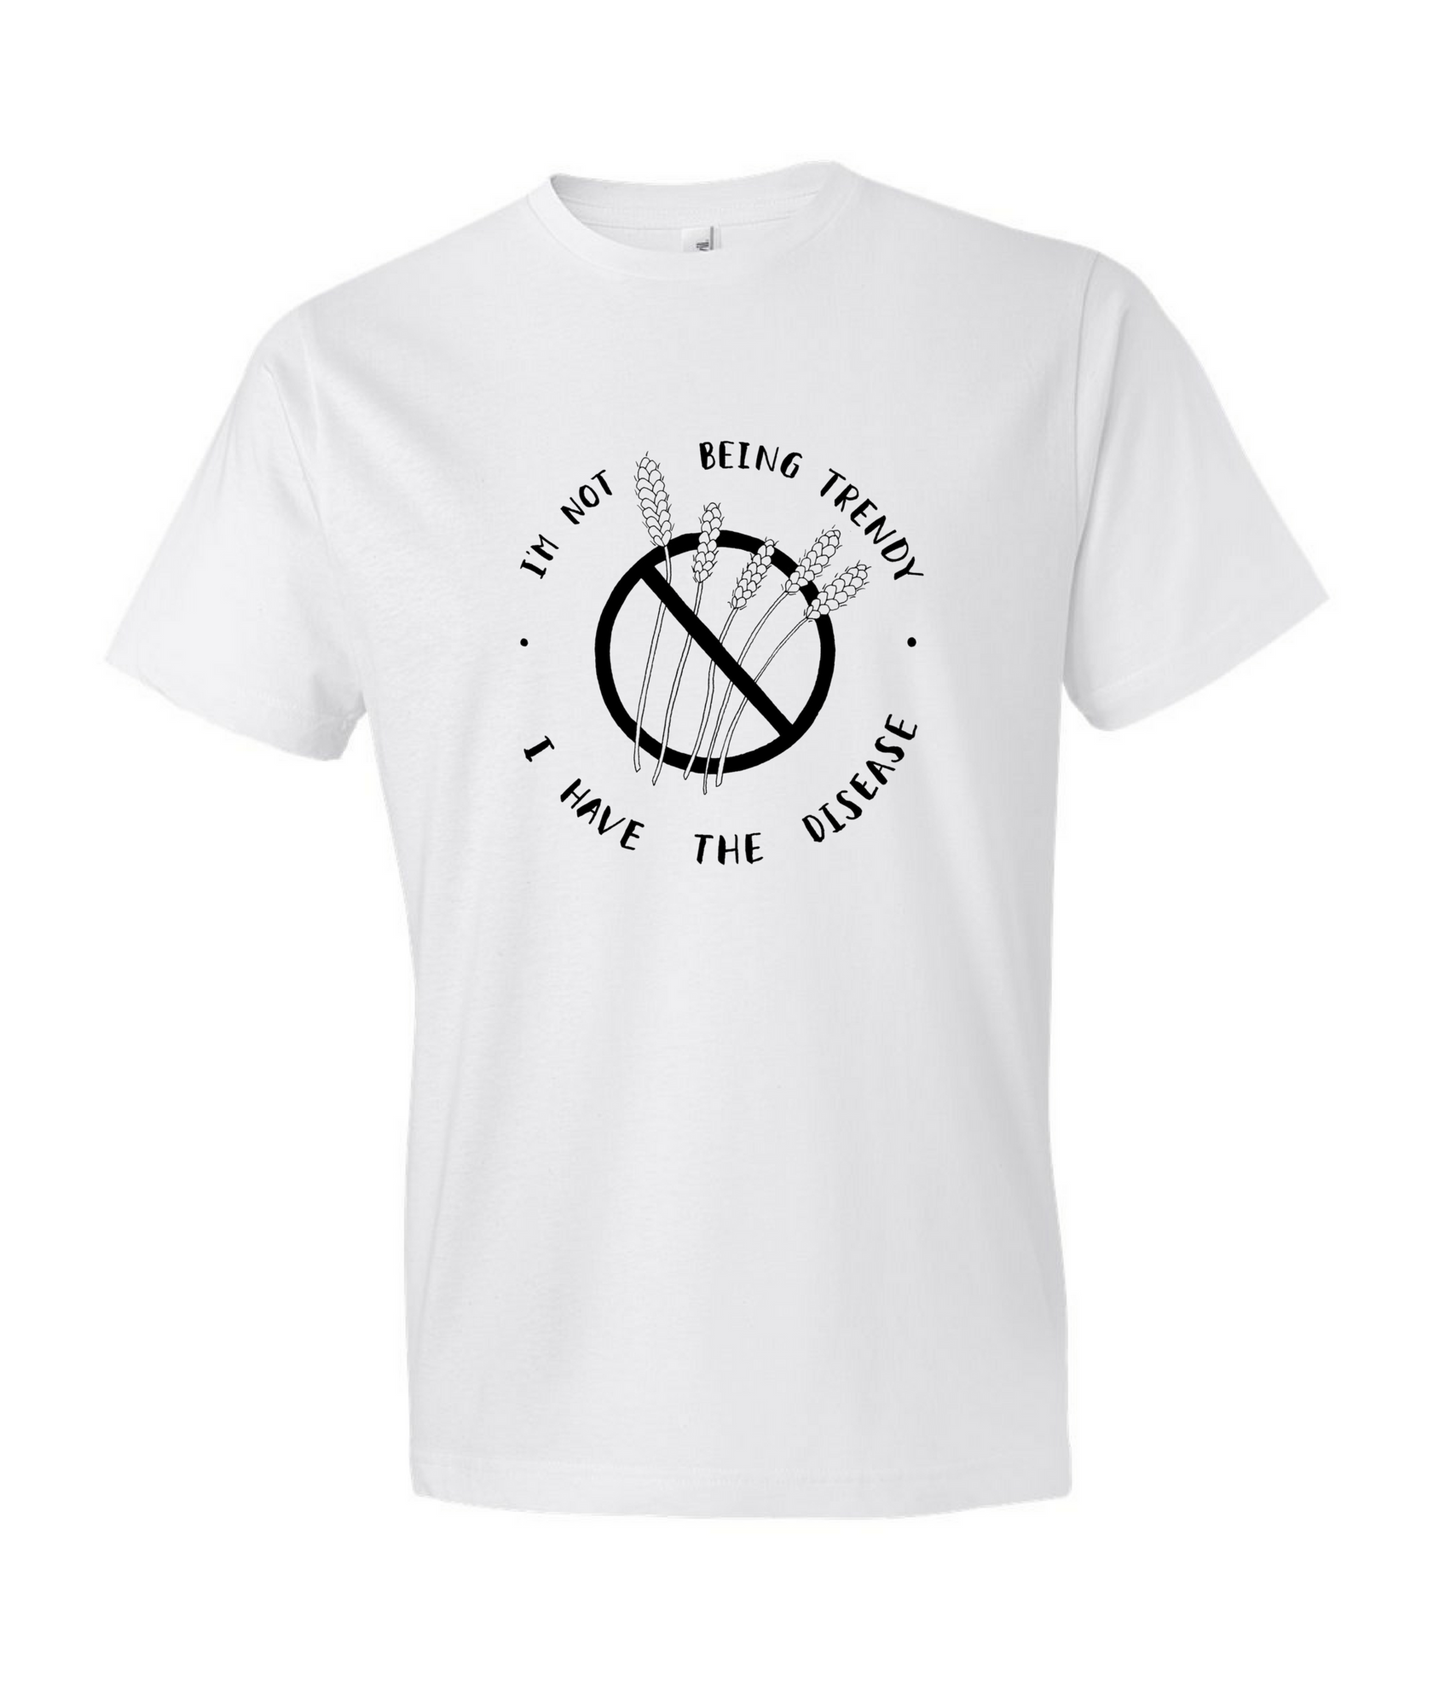 "I'm Not Being Trendy" - Men's White T-shirt for Celiacs